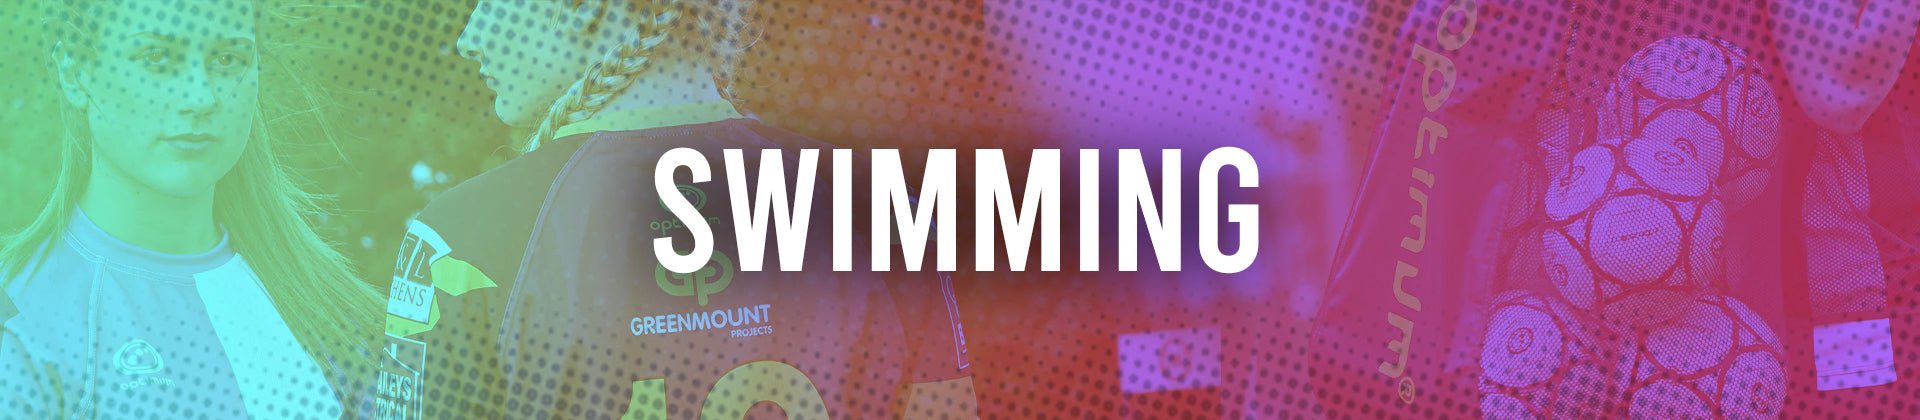 Swimwear - Optimum